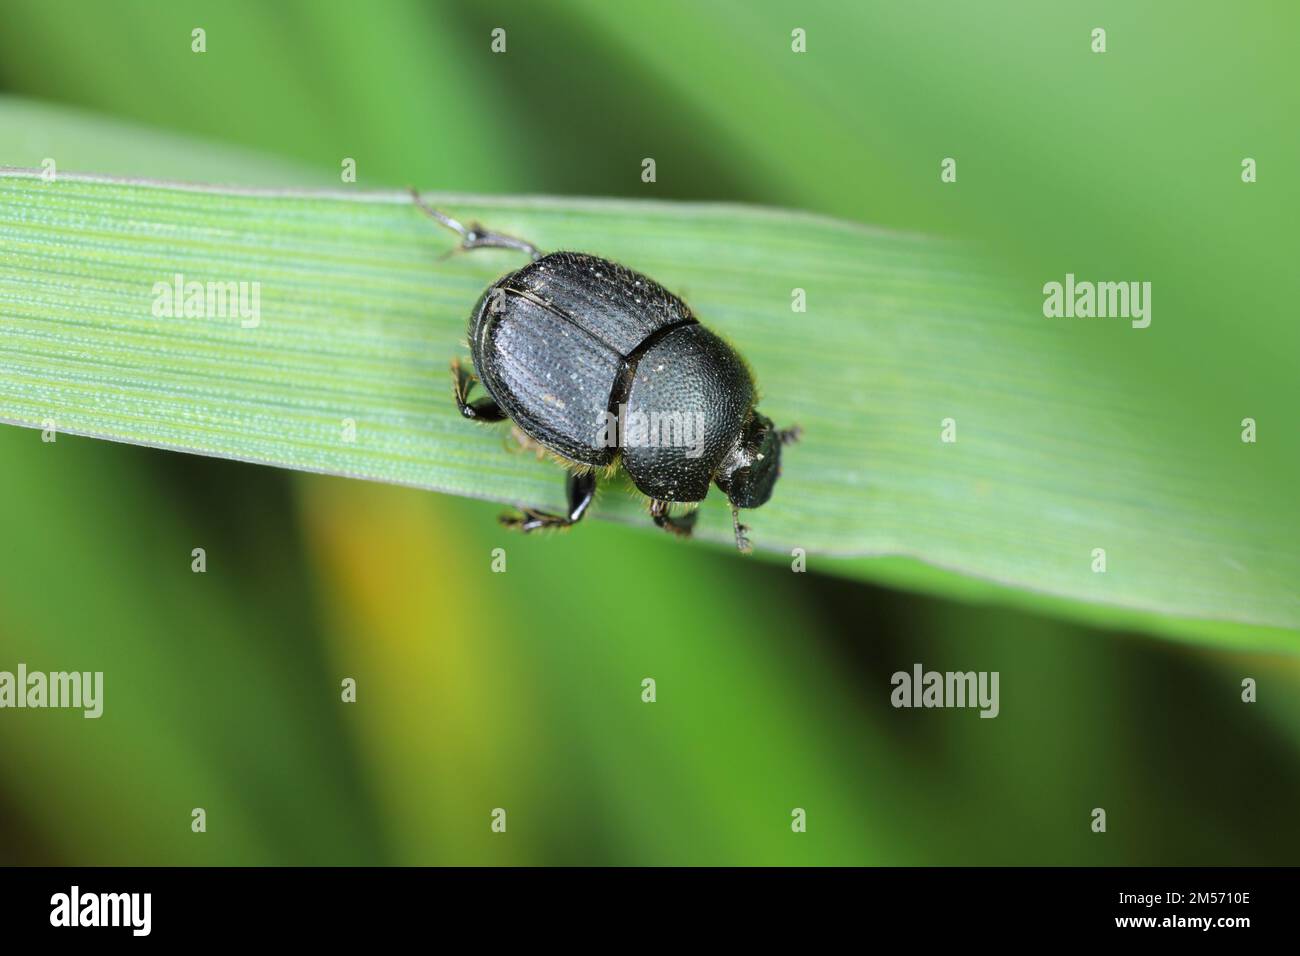 Onthophagus - coleottero di sterco. Piccolo coleottero della famiglia Scarabaeidae. Questi insetti si nutrono di escrementi animali. Foto Stock